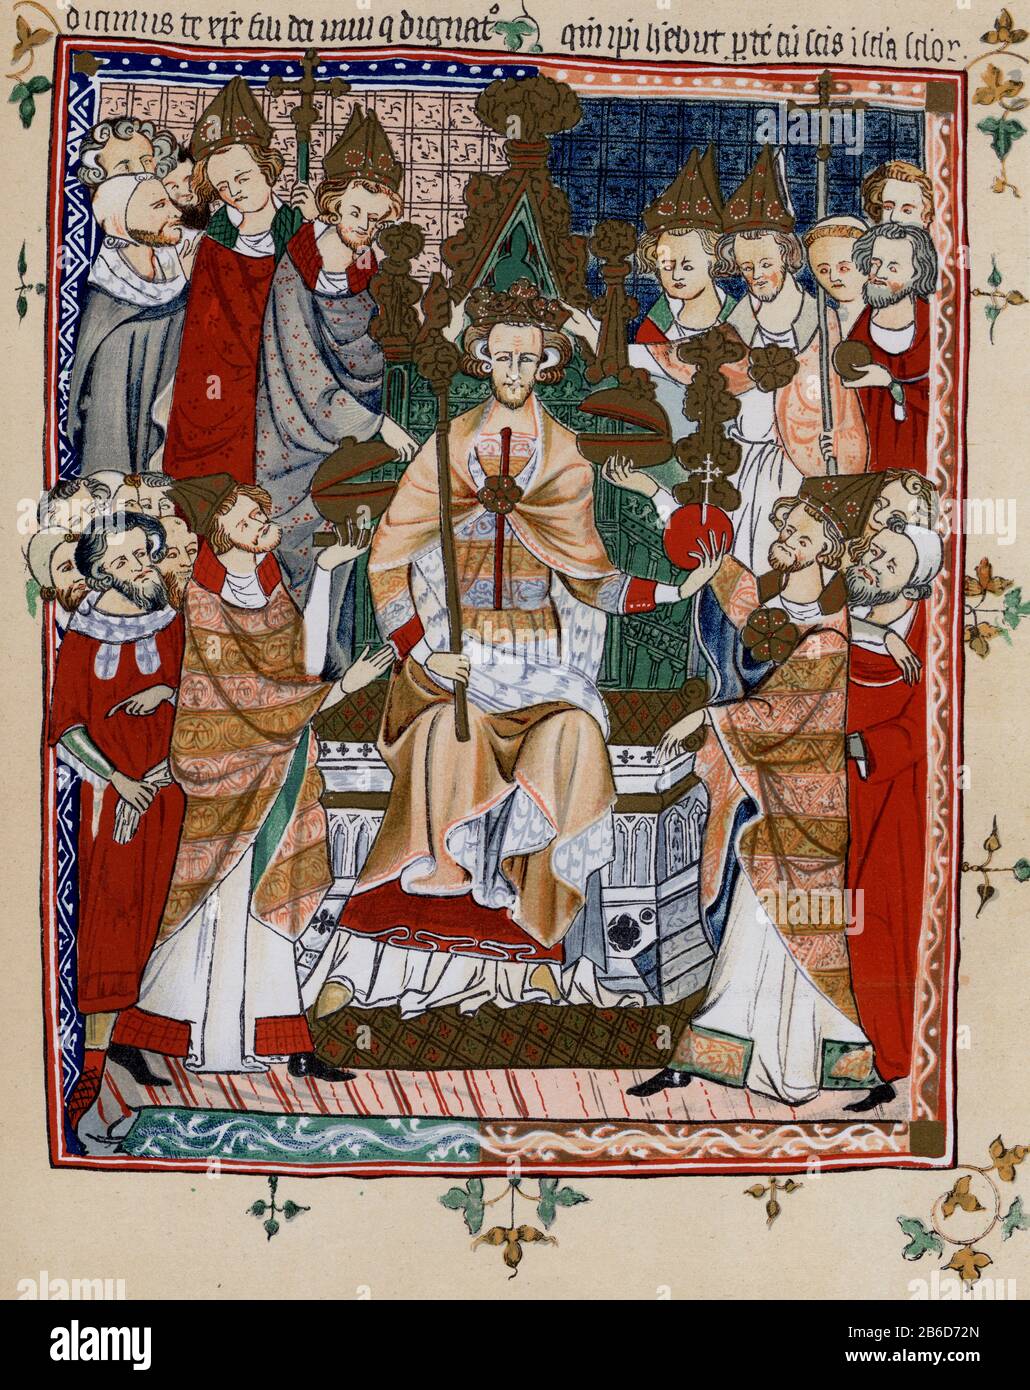 L'incoronazione del re Edoardo III, manoscritto dei primi anni del 14th. Edoardo III (1312-1377), Re d'Inghilterra e Signore d'Irlanda dal gennaio 1327 fino alla sua morte. Era il settimo re della Casa di Plantagenet. L'incoronazione di Edward ebbe luogo presso l'abbazia di Westminster il 1st febbraio 1327 all'età di 14 anni. Foto Stock